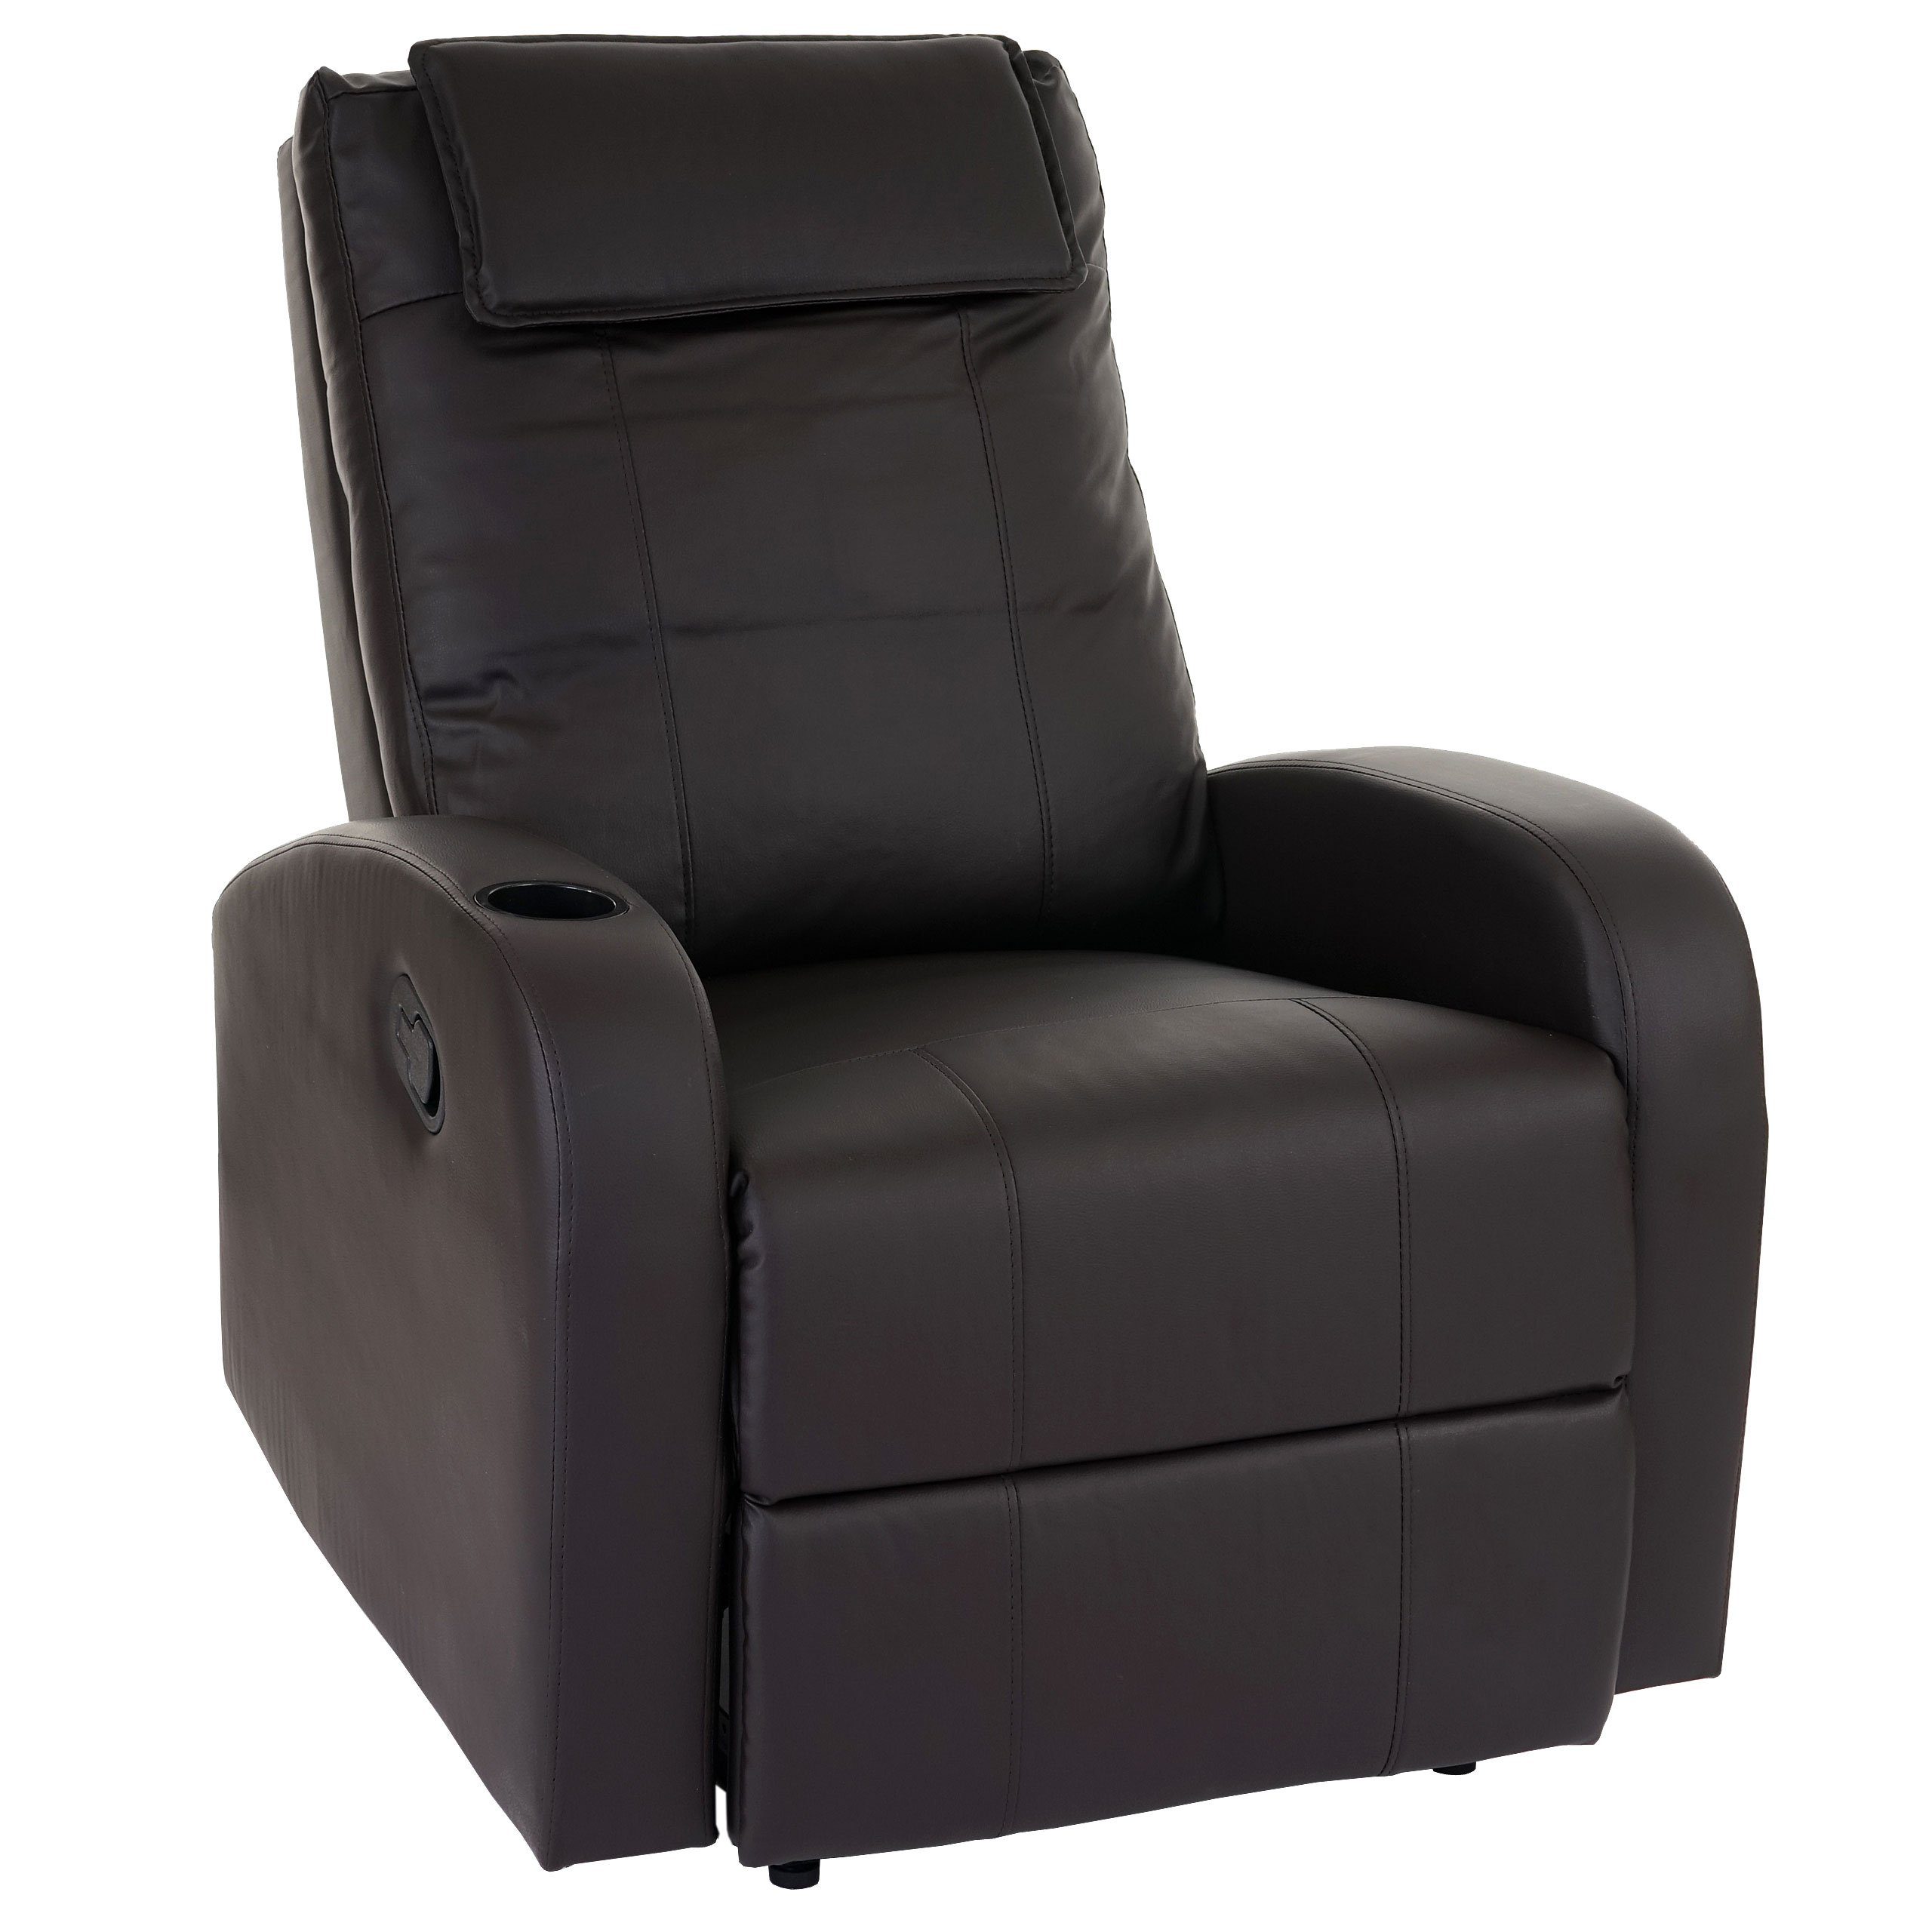 MCW Relaxsessel Br?ssel, braun Dicke Sitz- Polsterung Becherhalter, Liegeposition oder möglich, Inkl